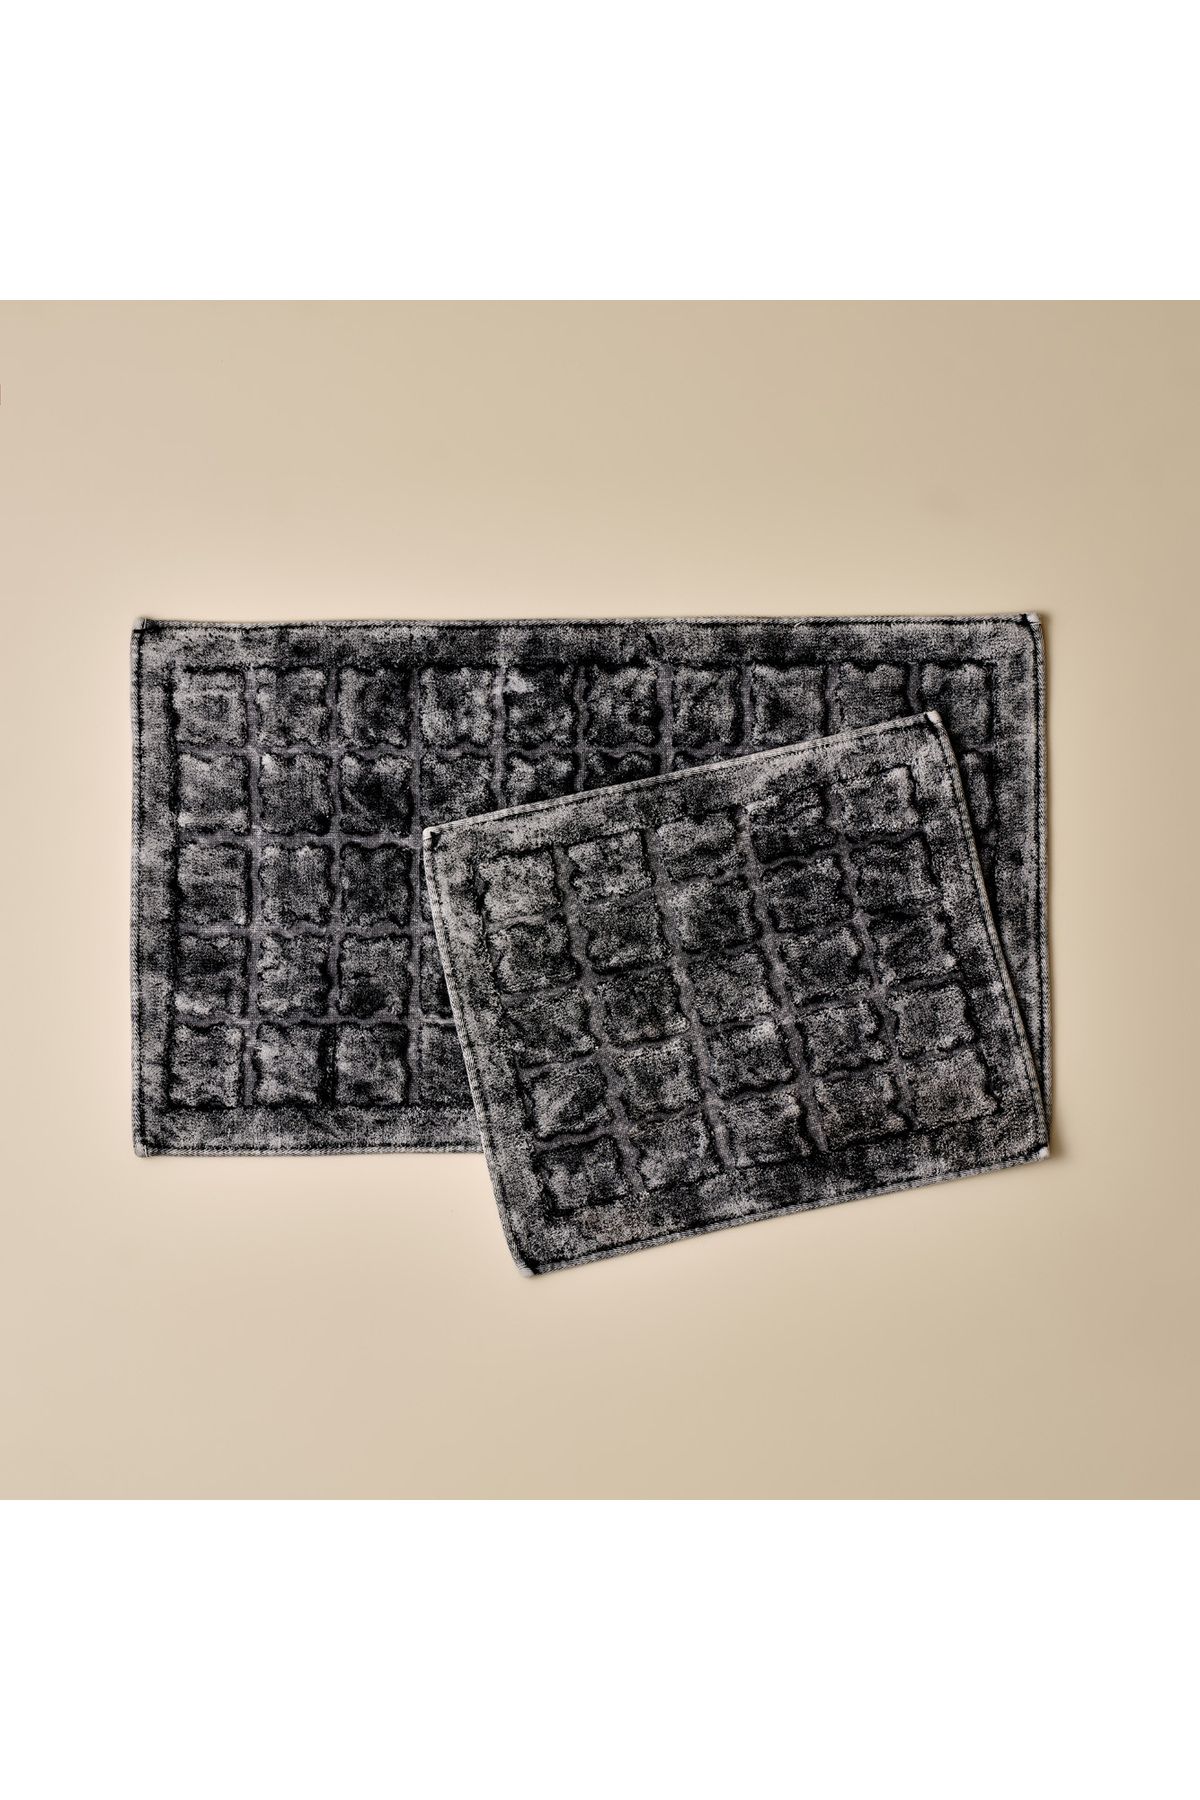 Bella Maison Perla Paspas Takımı Siyah (60x100 - 50x60 cm)